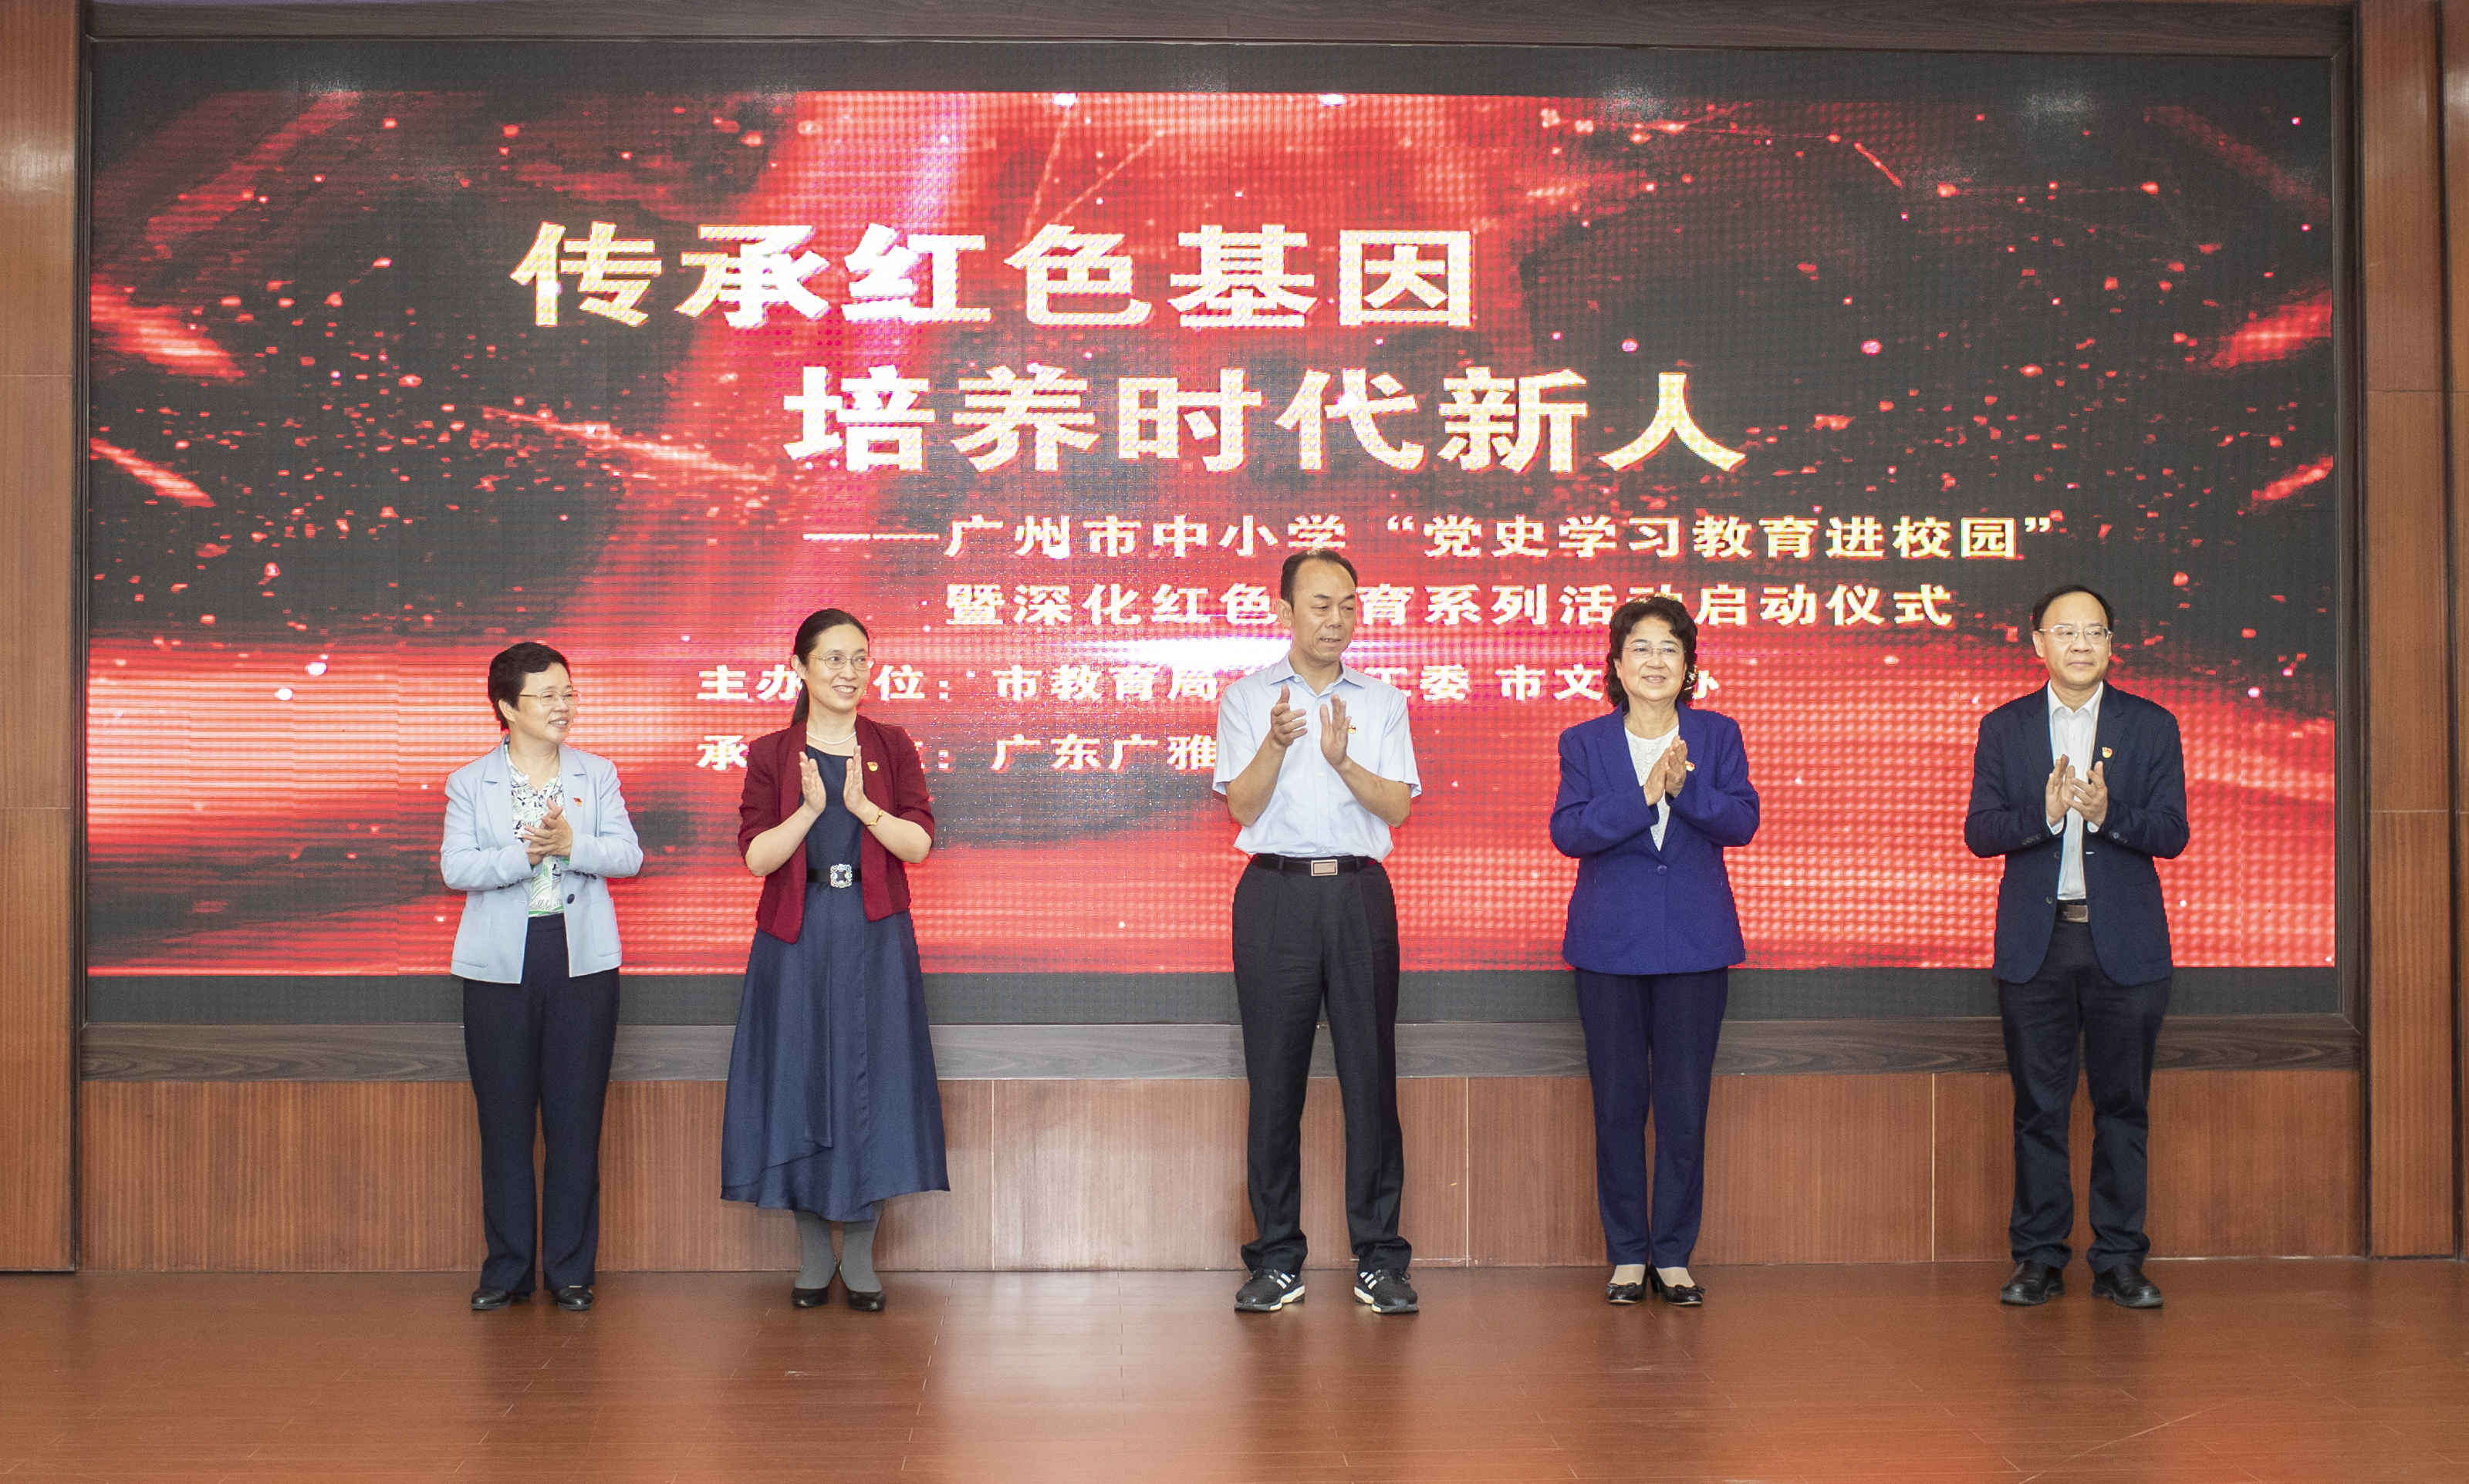 传承红色基因,培育时代新人——广州市党史学习教育进校园活动启动